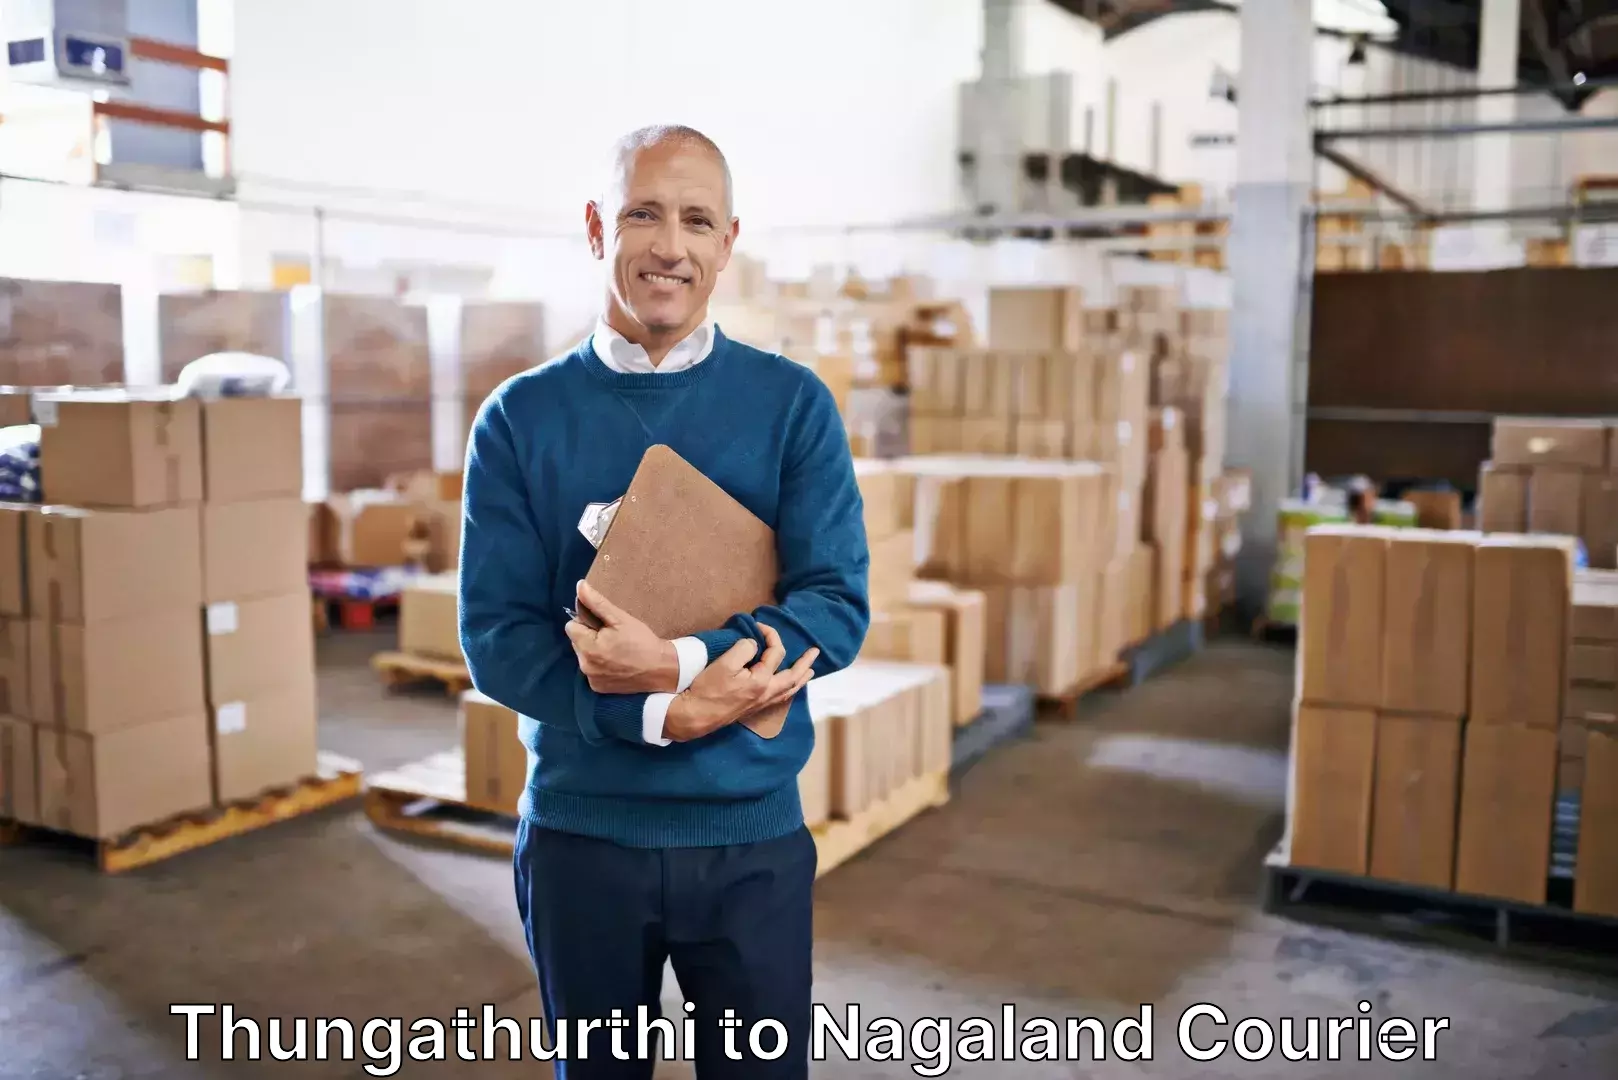 Luggage shipping specialists Thungathurthi to NIT Nagaland